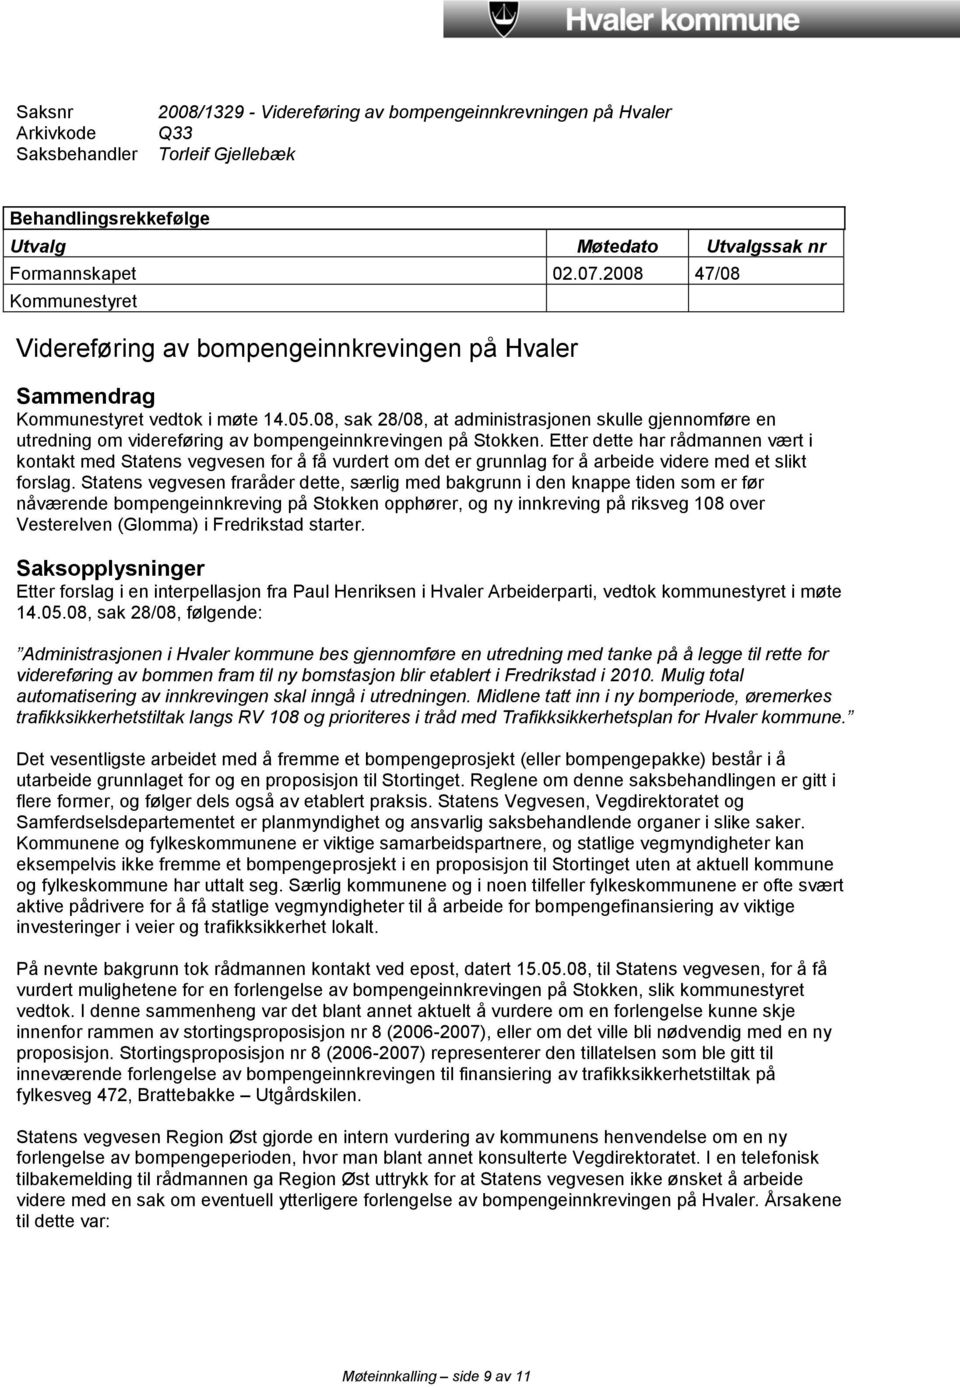 08, sak 28/08, at administrasjonen skulle gjennomføre en utredning om videreføring av bompengeinnkrevingen på Stokken.